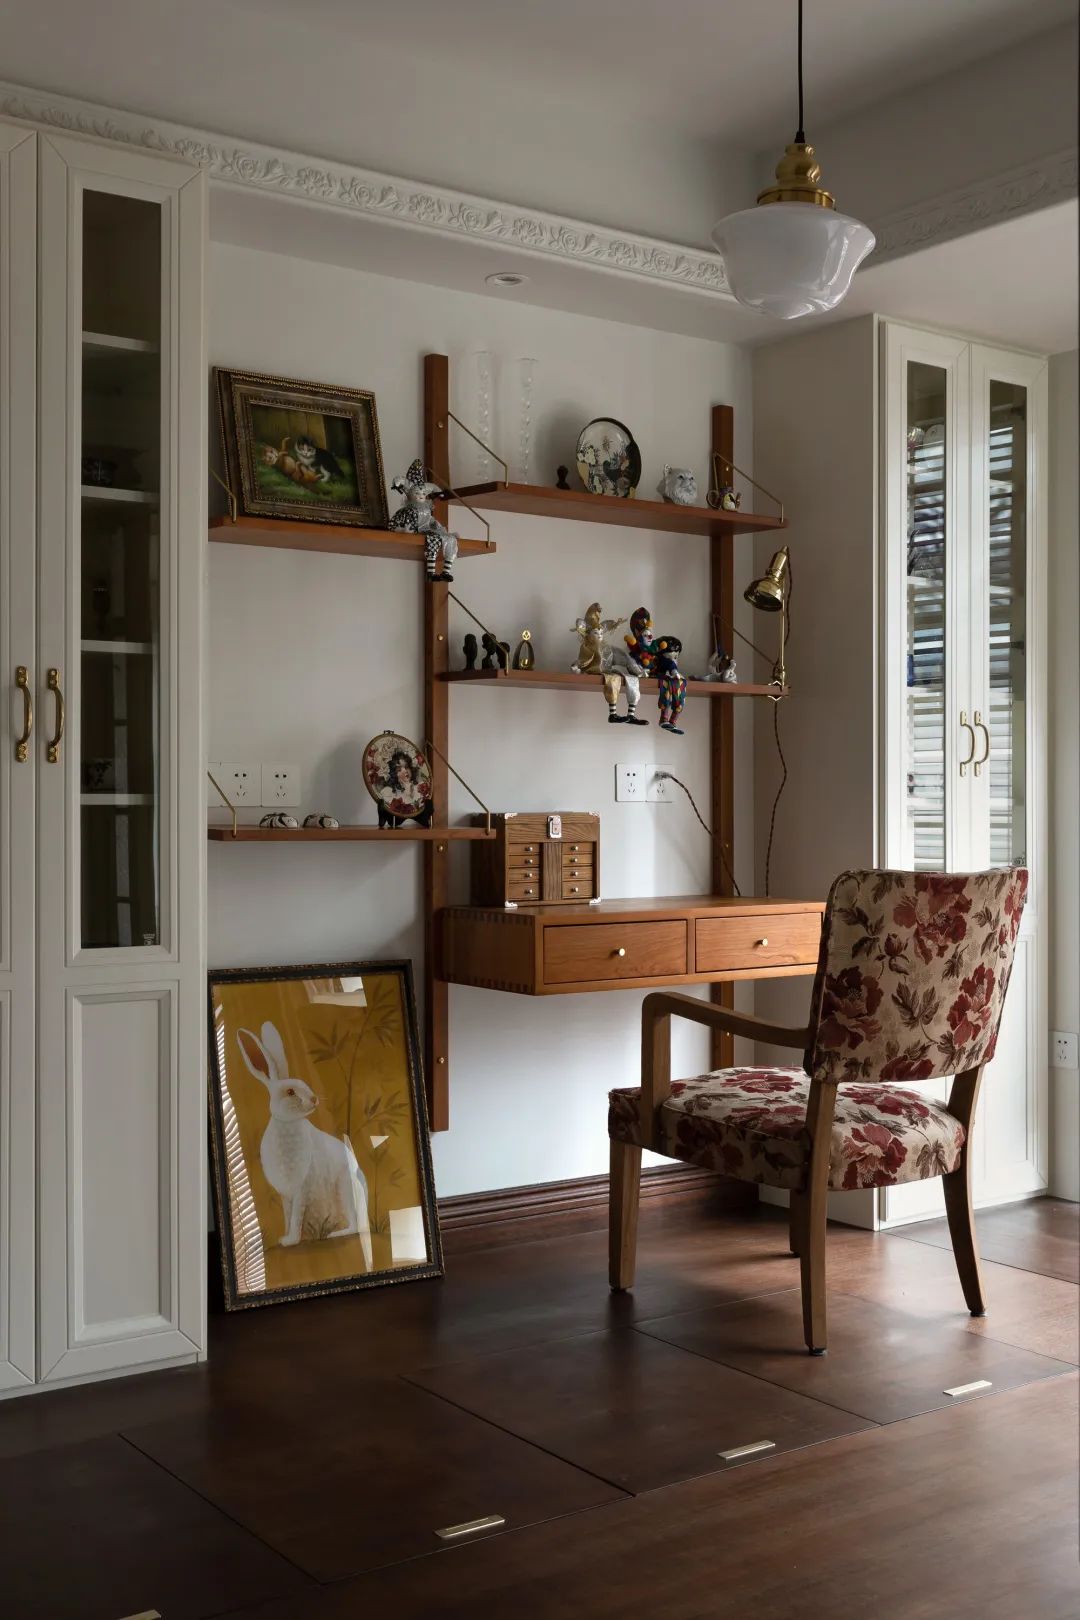 Đồ nội thất là yếu tố chính trong thiết kế chung cư phong cách Vintage. Việc lựa chọn đồ dùng phải mang tính hoài cổ và có dấu ấn của thời gian